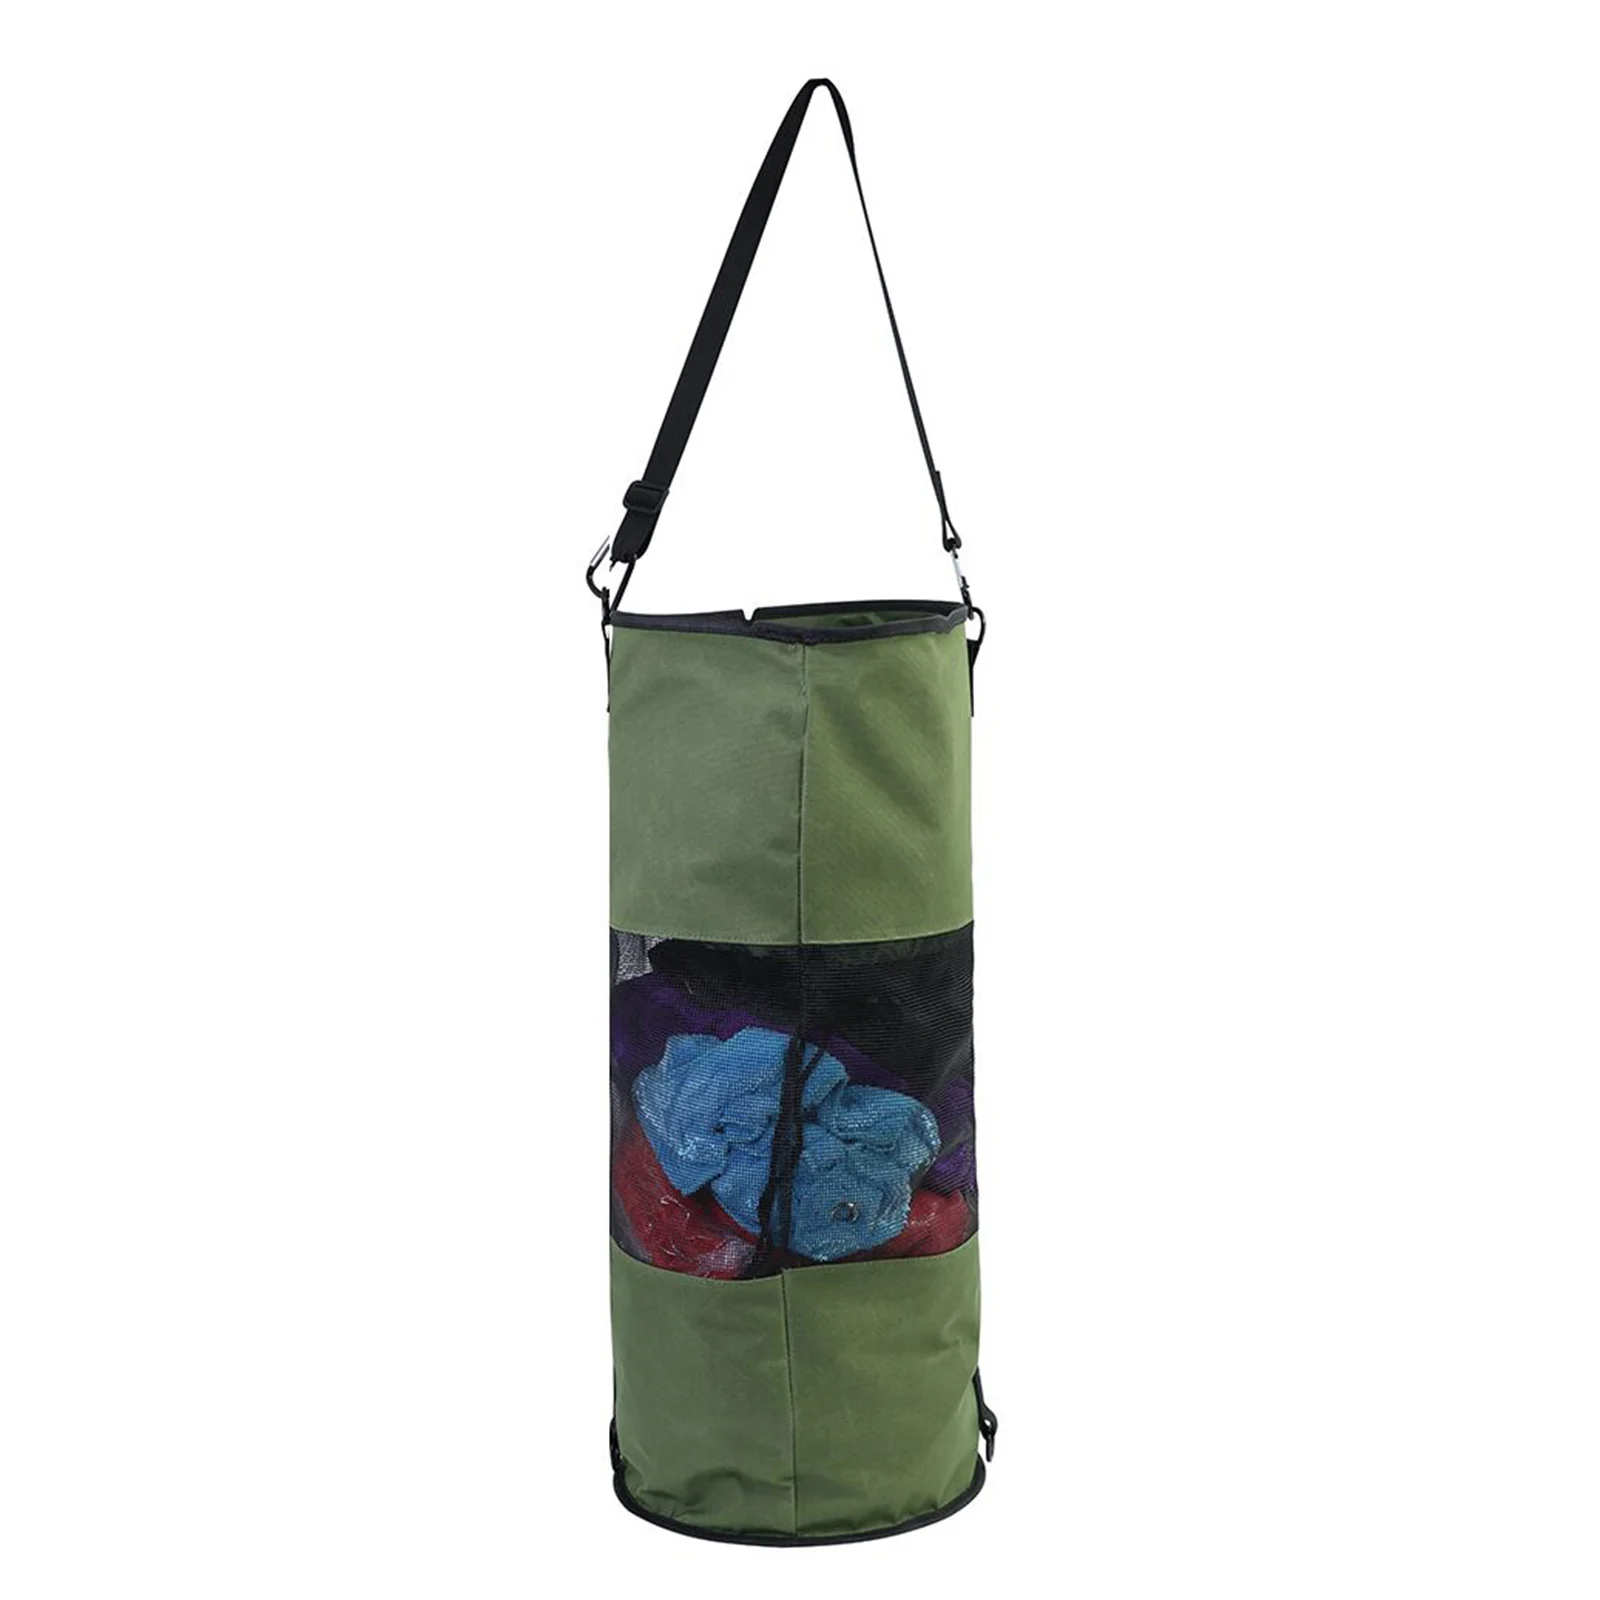 Boat Trash Bag Portable Outdoor Mesh Trash Bag for Your Boat, Kayak, or Camper Lightweight & Large Capacity Bin Bag